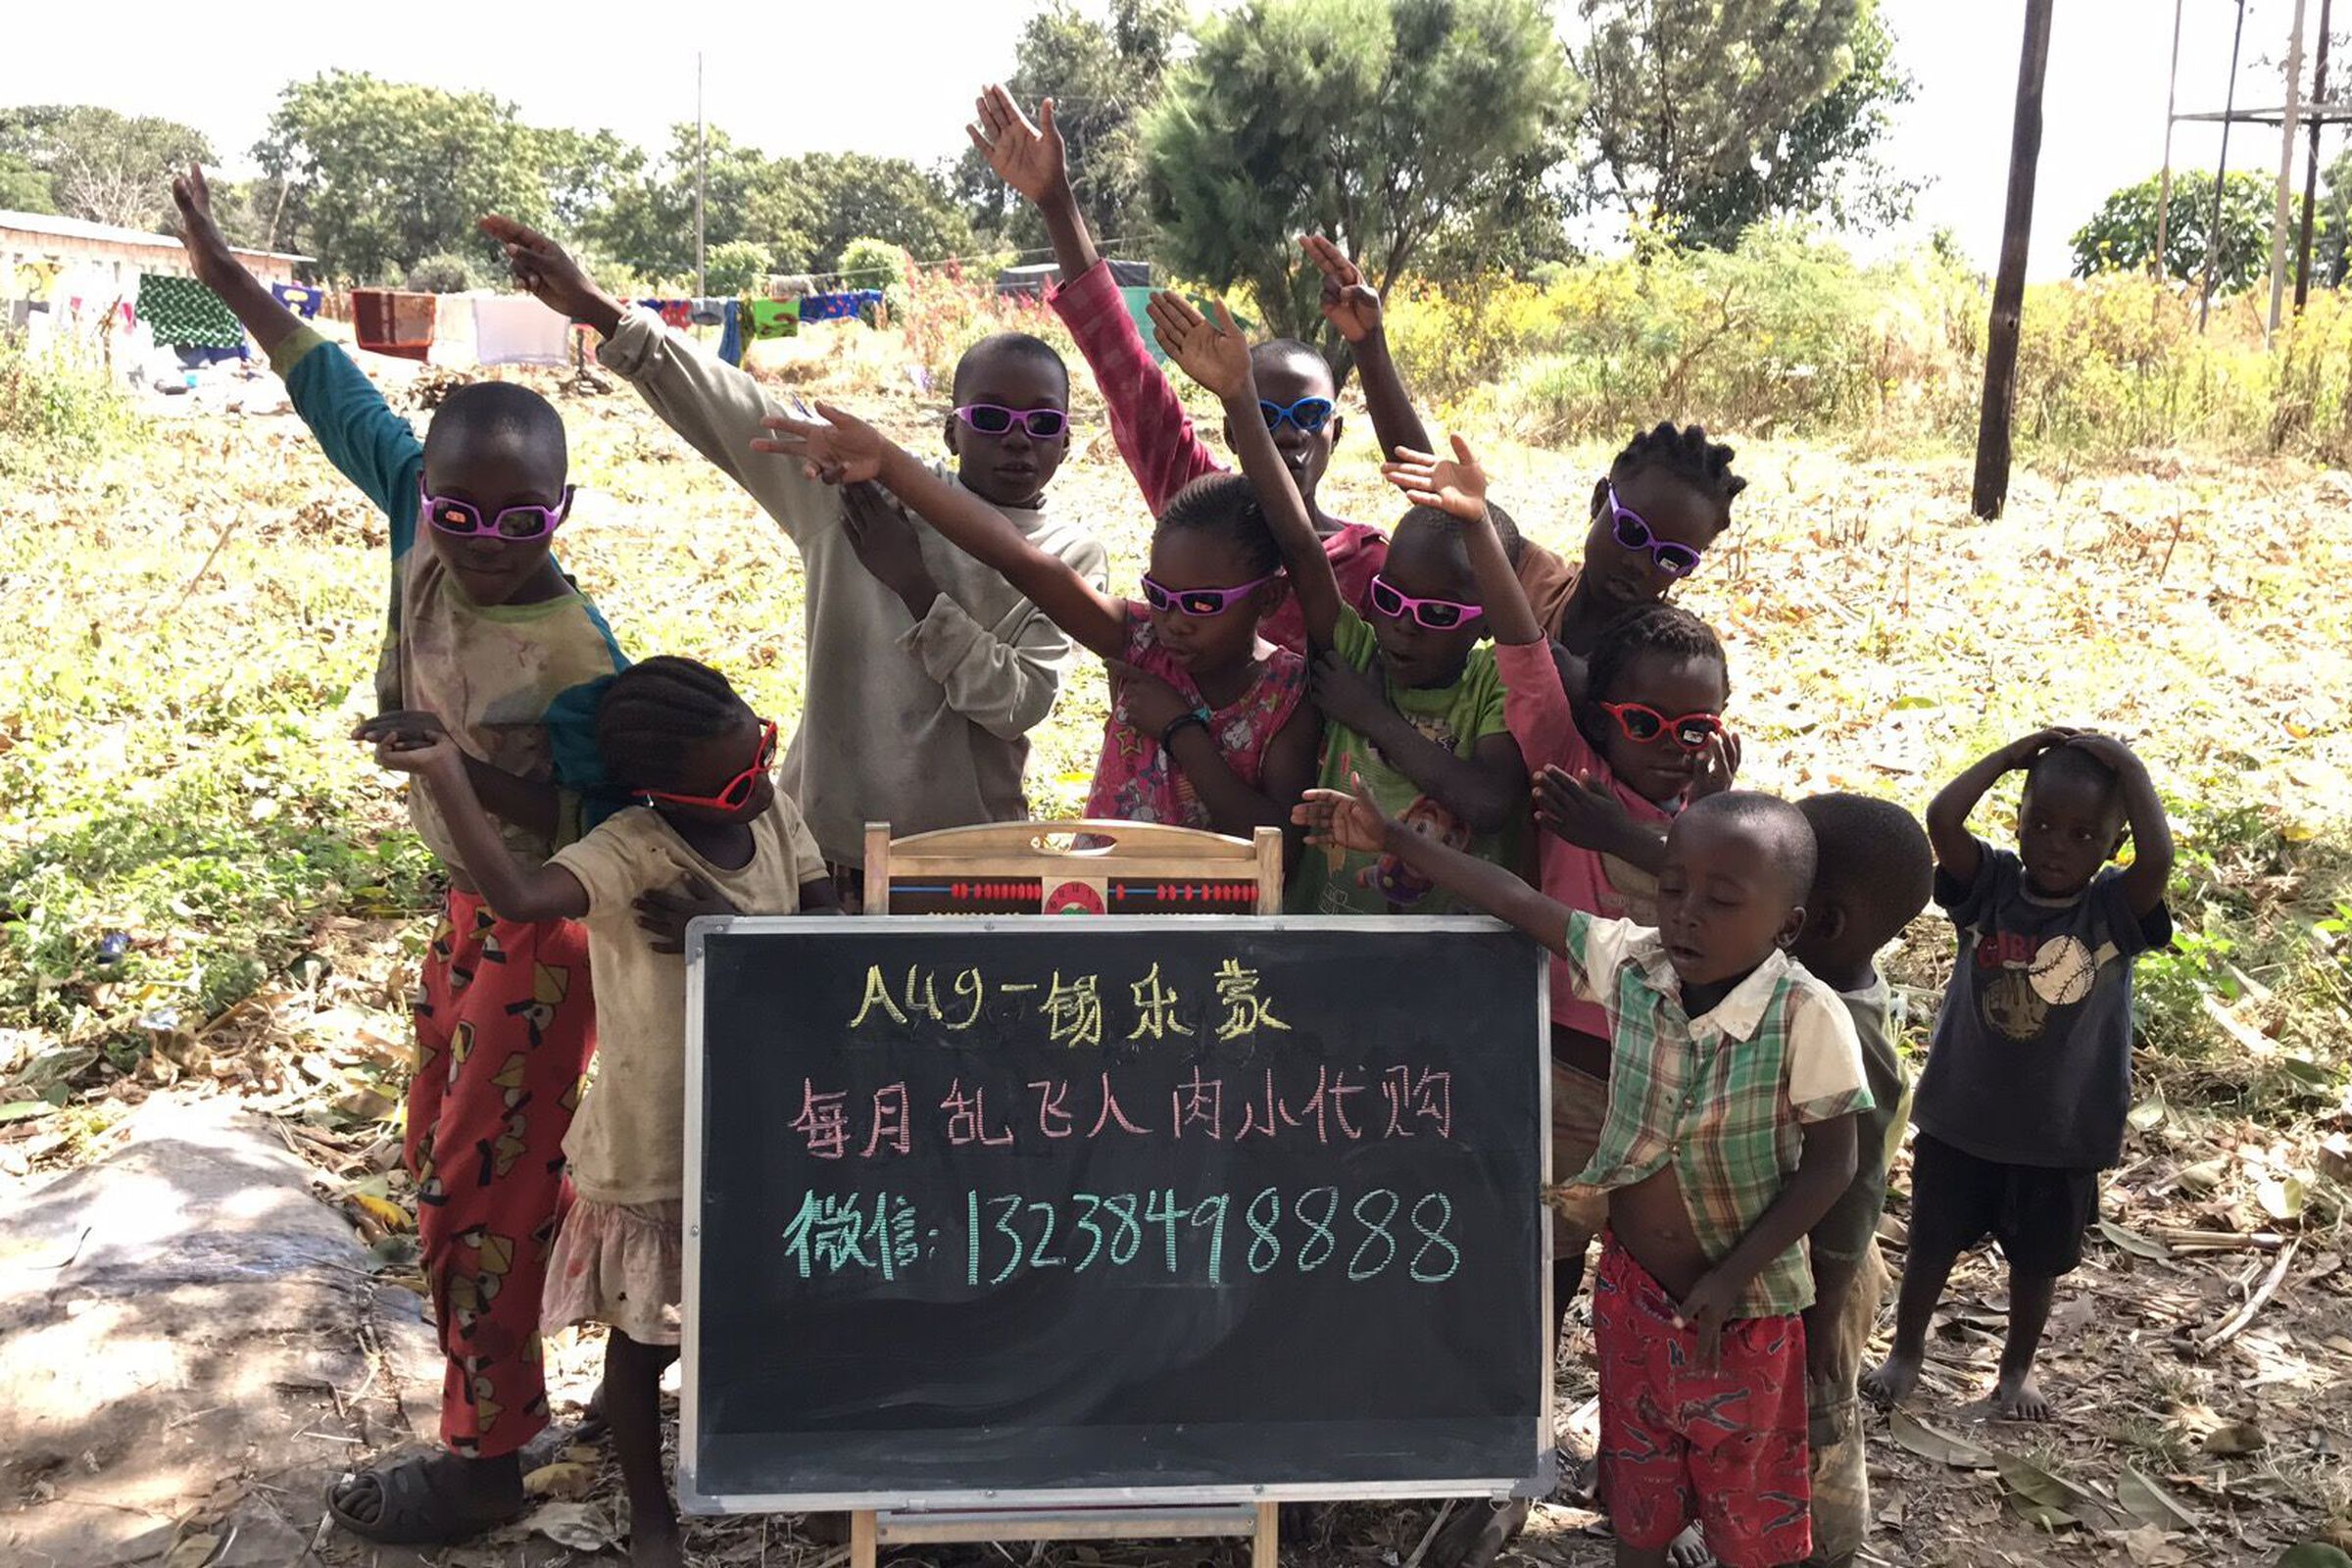 Children posing for a Taobao vendor